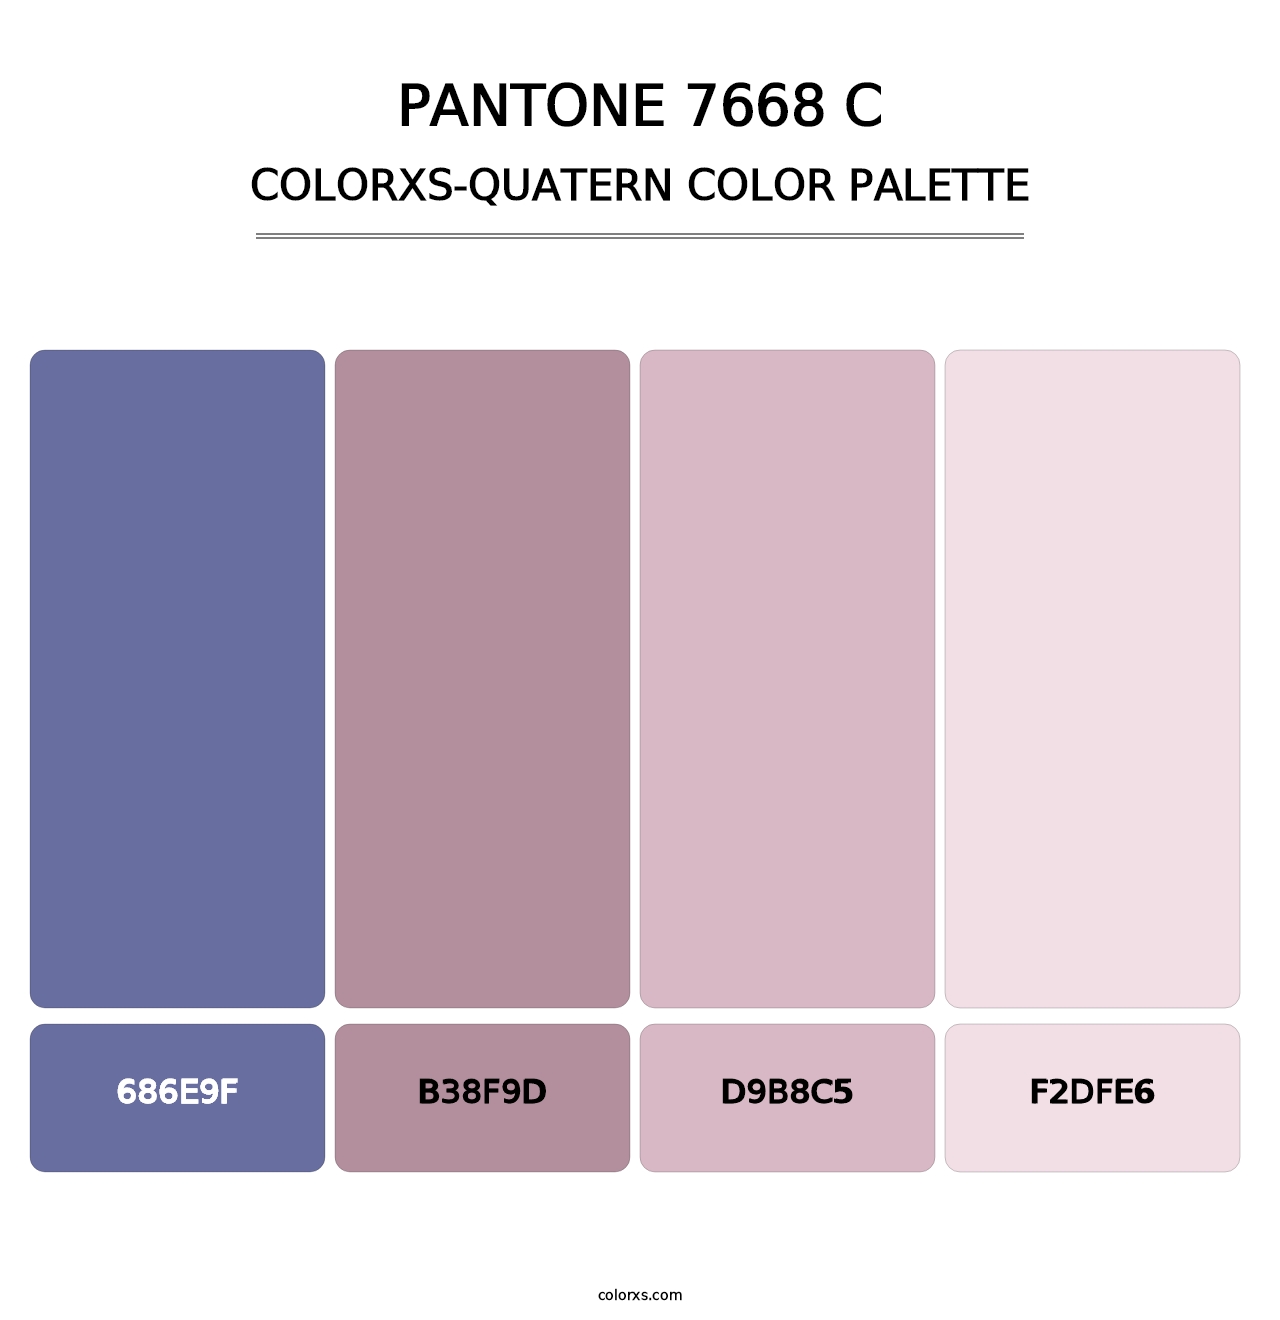 PANTONE 7668 C - Colorxs Quatern Palette